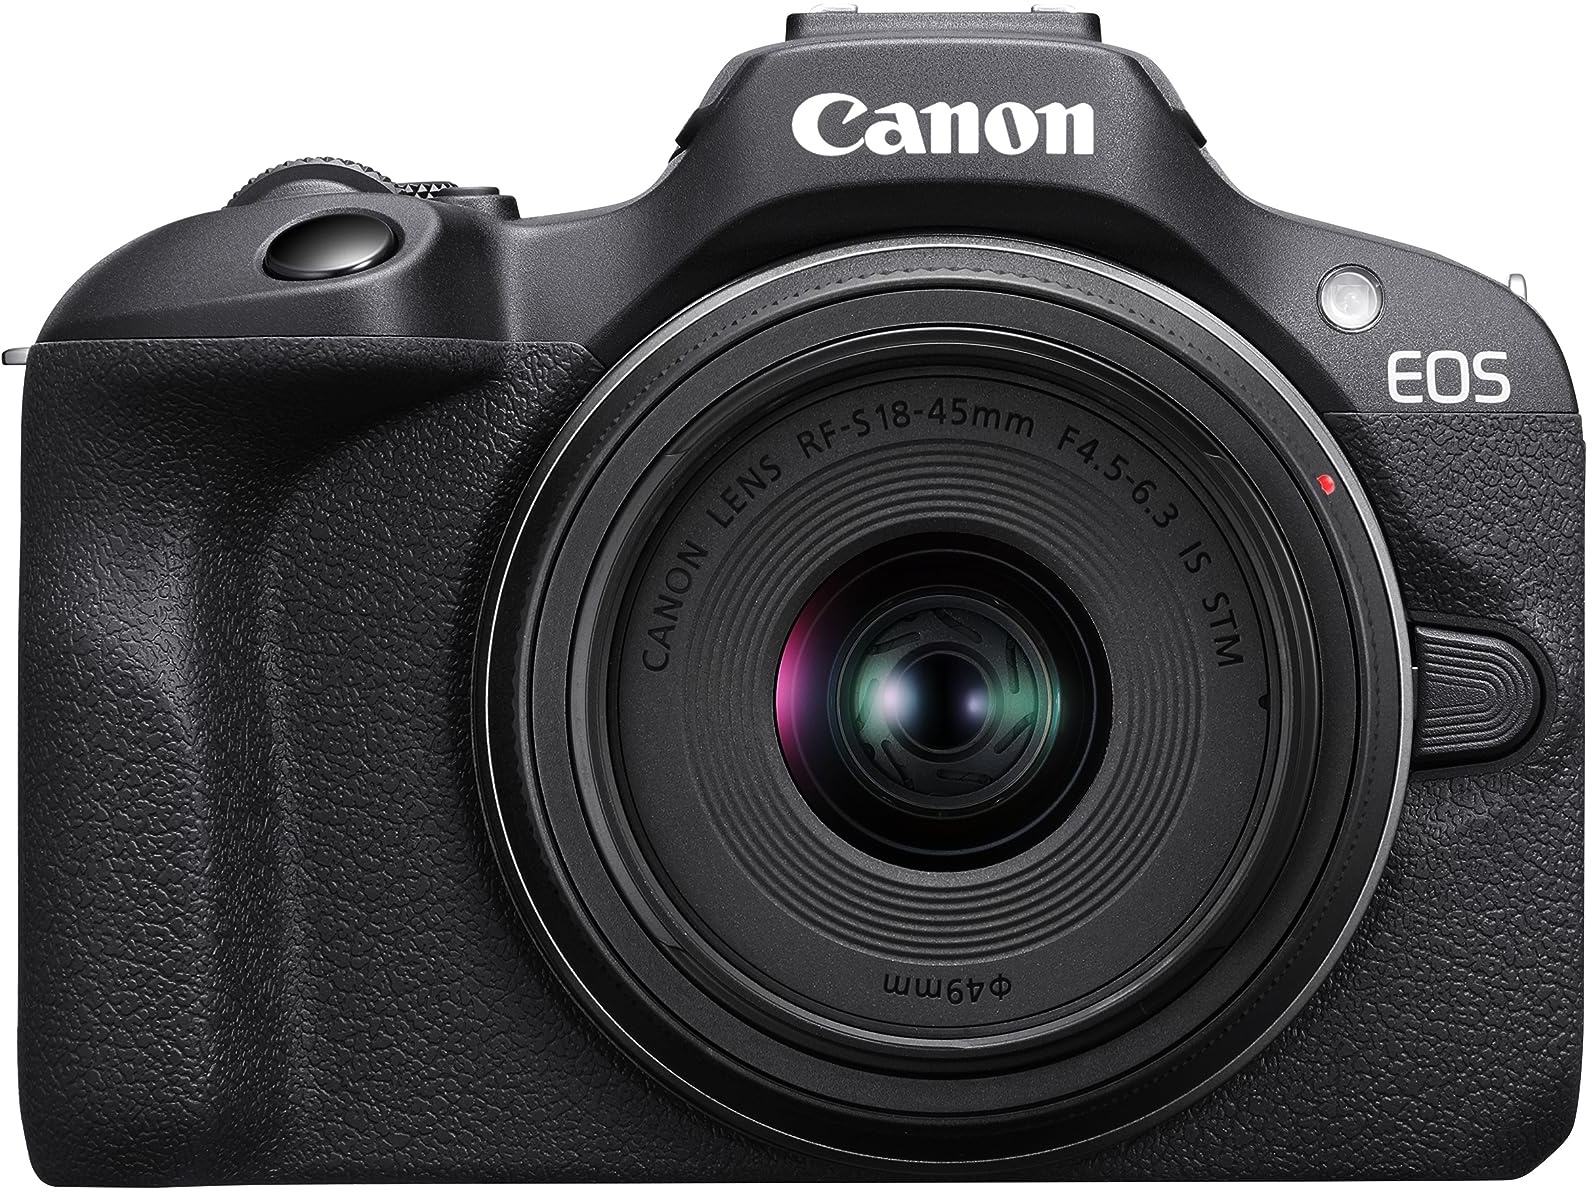 Canon EOS R100 Spiegellose Kamera + RF-S 18-45mm is STM Objektiv + RF-S 55-210mm is STM Objektiv (Kompaktkamera, 4k Videokamera, Digitalkamera mit Autofokus und Motiverkennung)